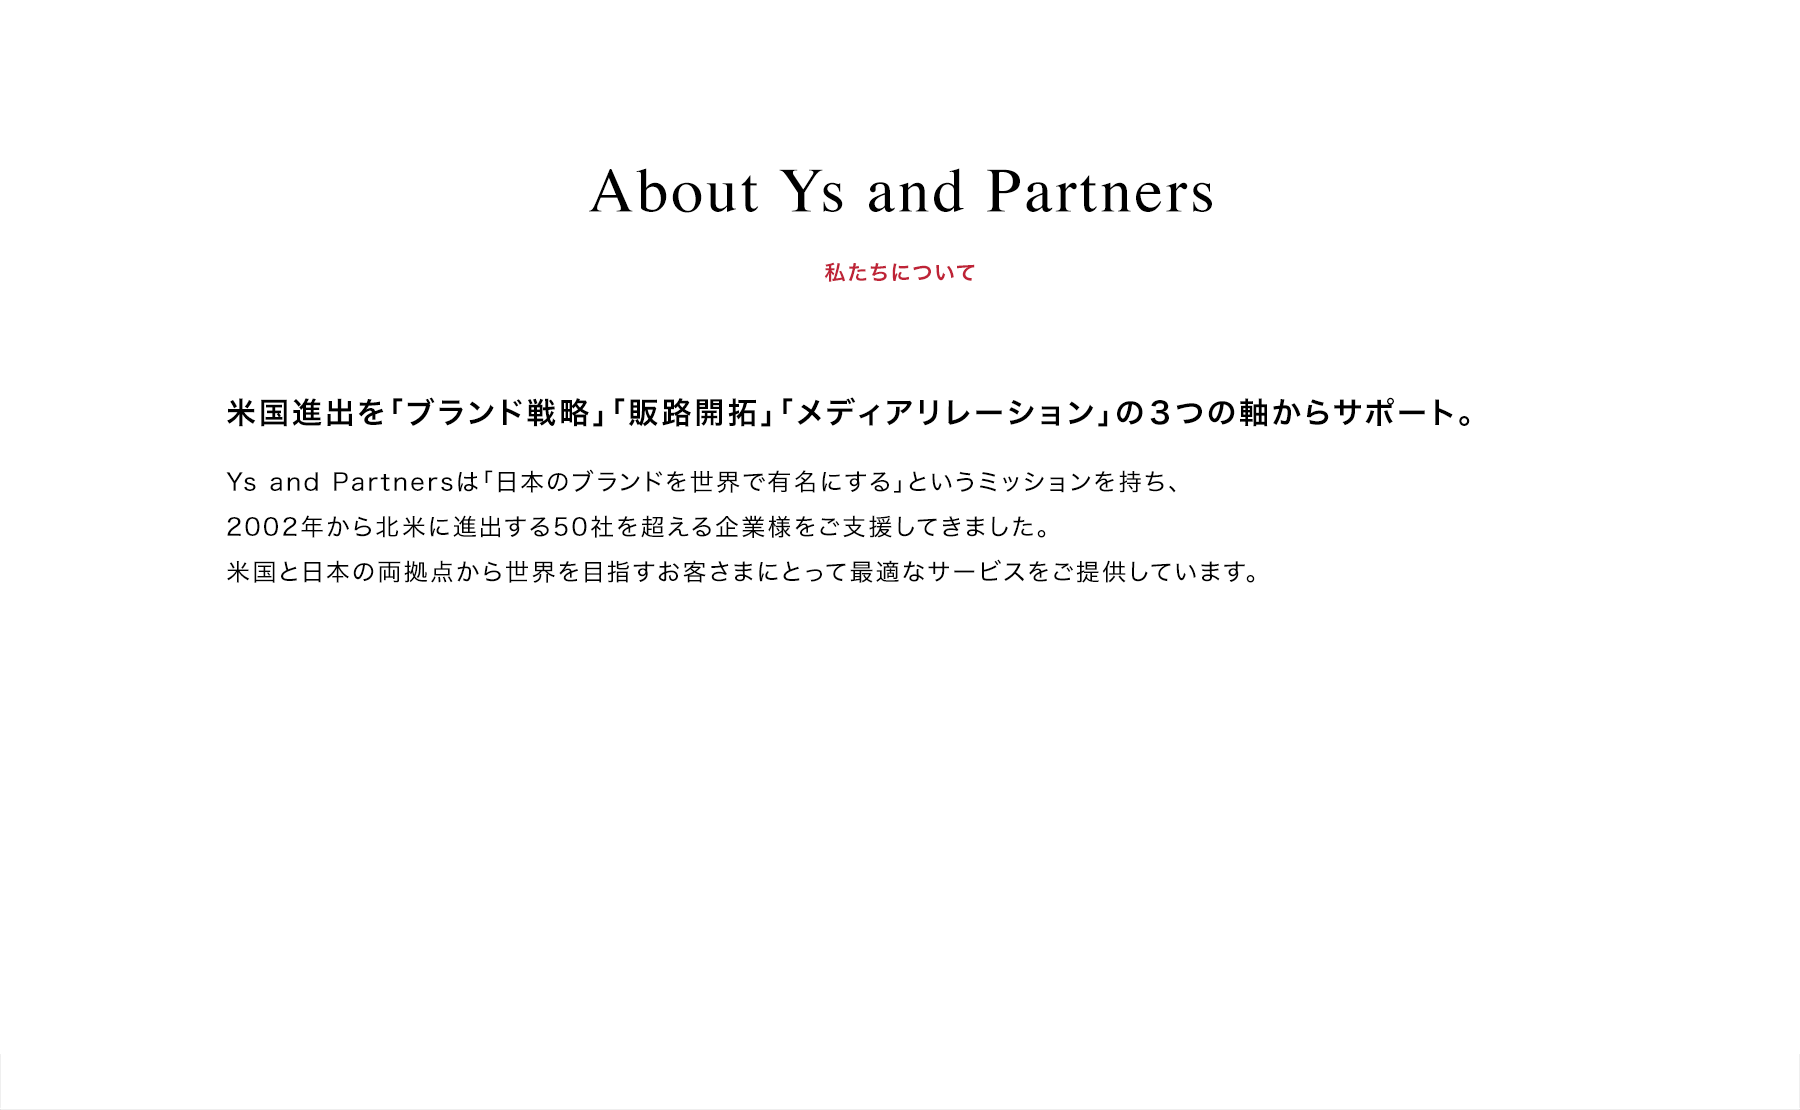 About Ys and Partners | 私たちについて | 米国進出を「ブランド戦略」「販路開拓」「メディアリレーション」の３つの軸からサポート。 | Ys and Partnersは「日本のブランドを世界で有名にする」というミッションを持ち、2002年から北米に進出する50社を超える企業様をご支援してきました。米国と日本の両拠点から世界を目指すお客さまにとって最適なサービスをご提供しています。